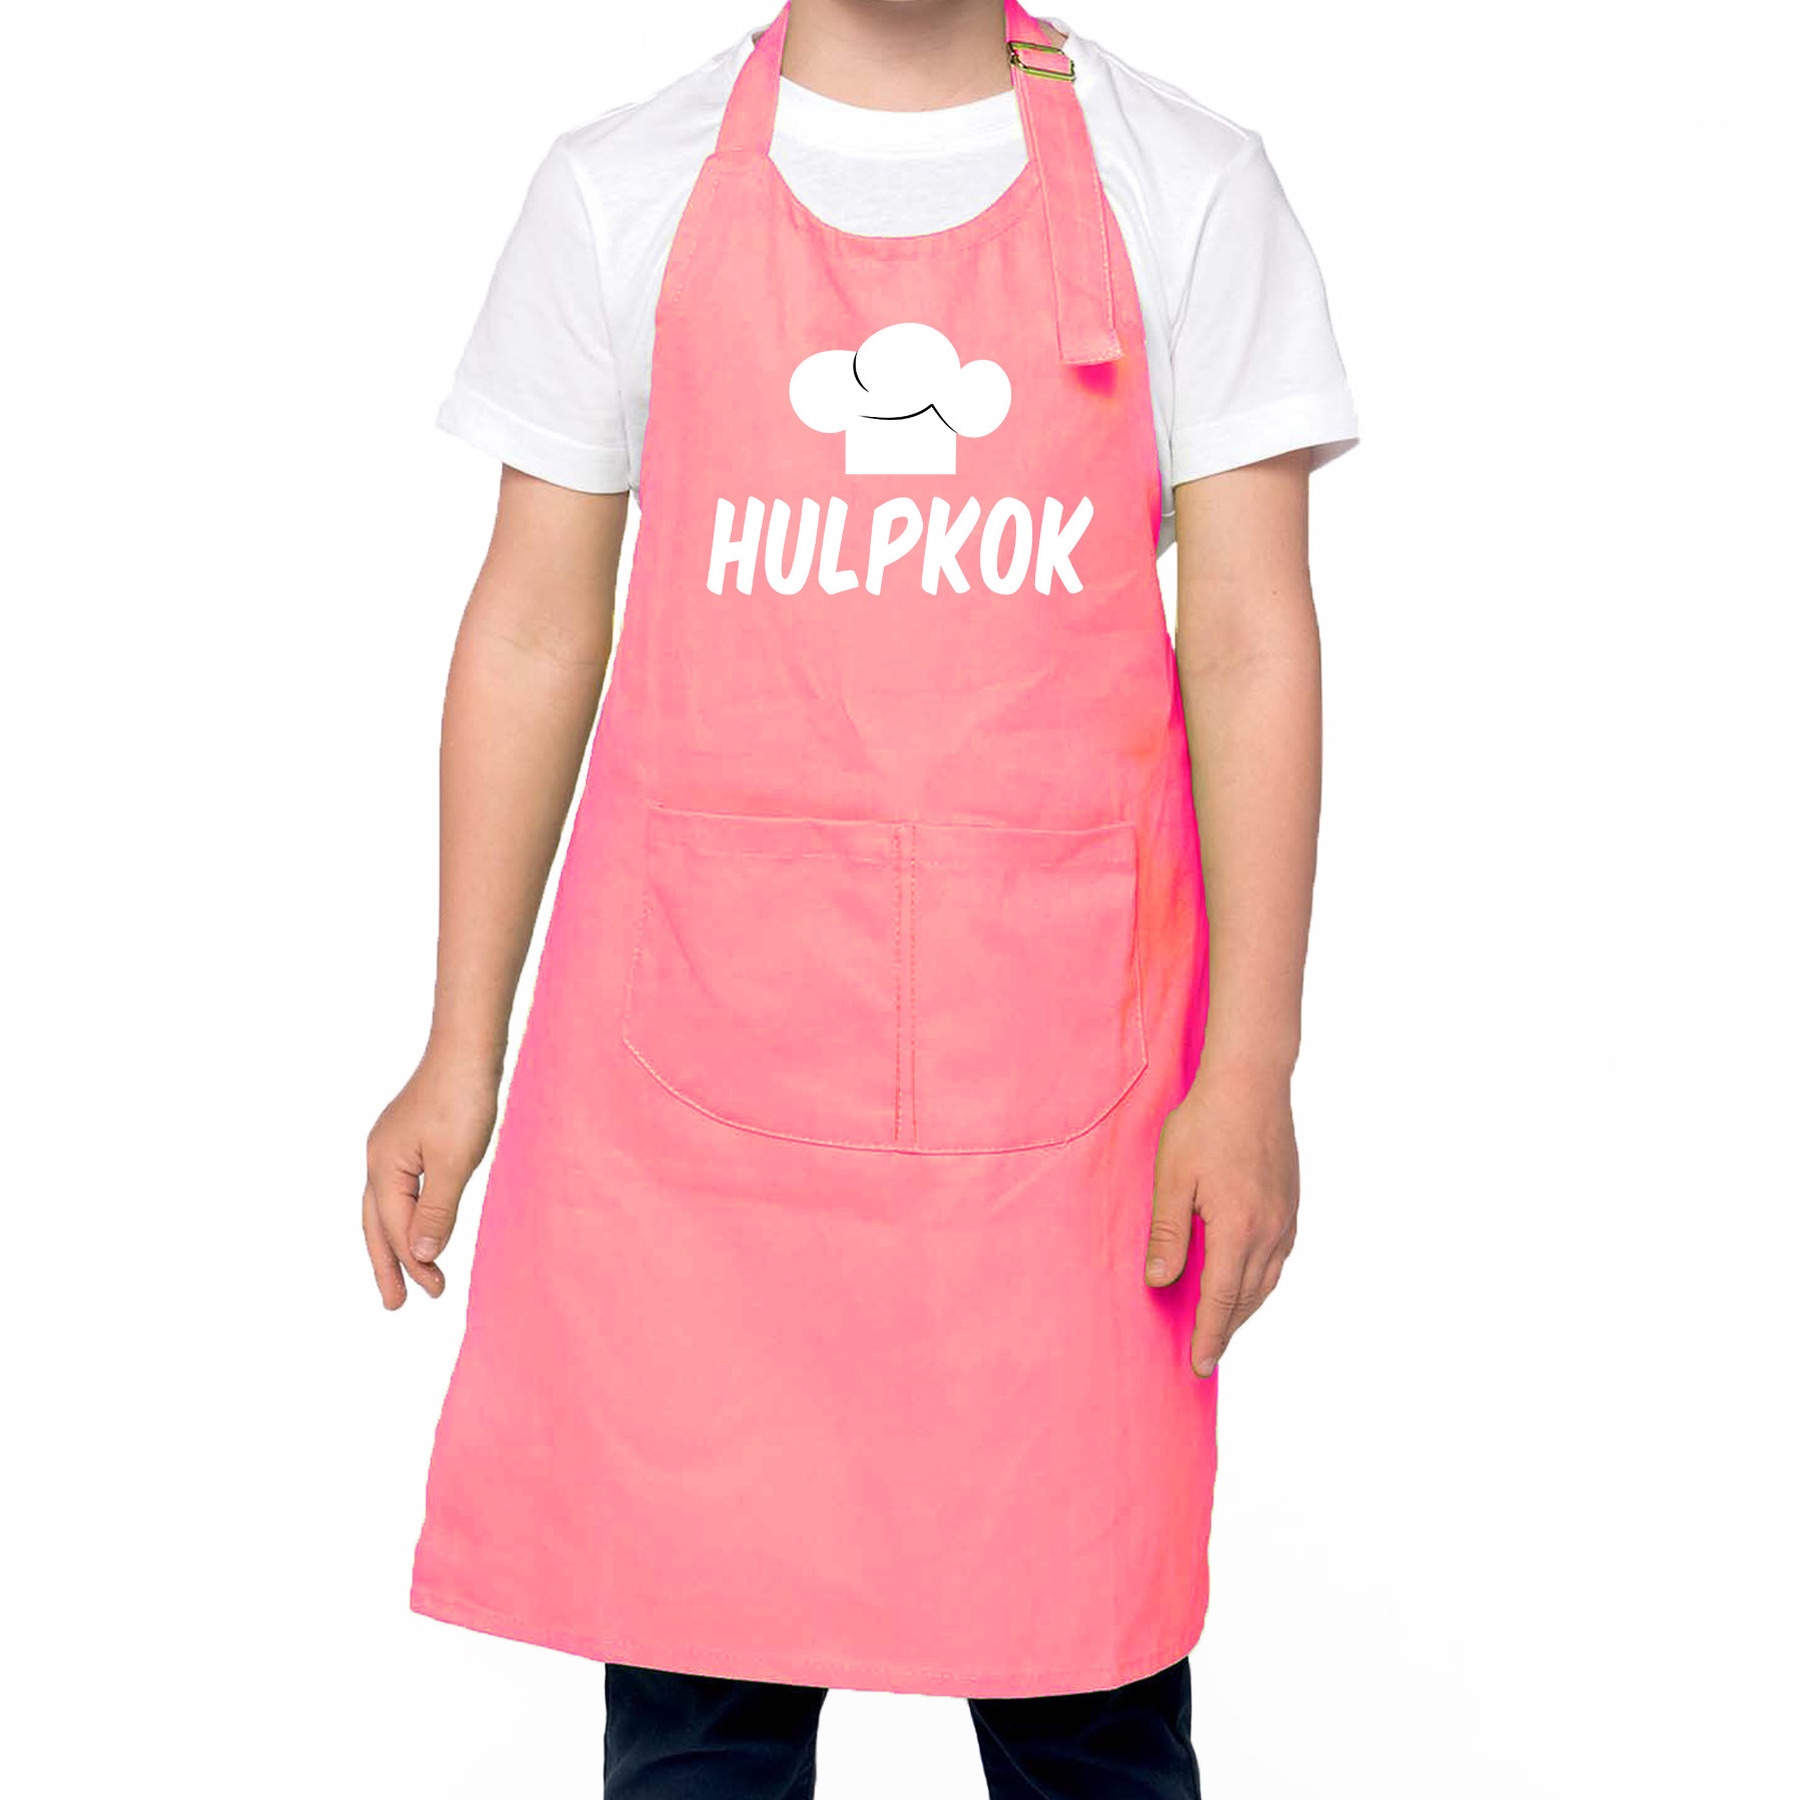 Hulpkok Keukenschort kinderen- kinder schort roze voor jongens en meisjes